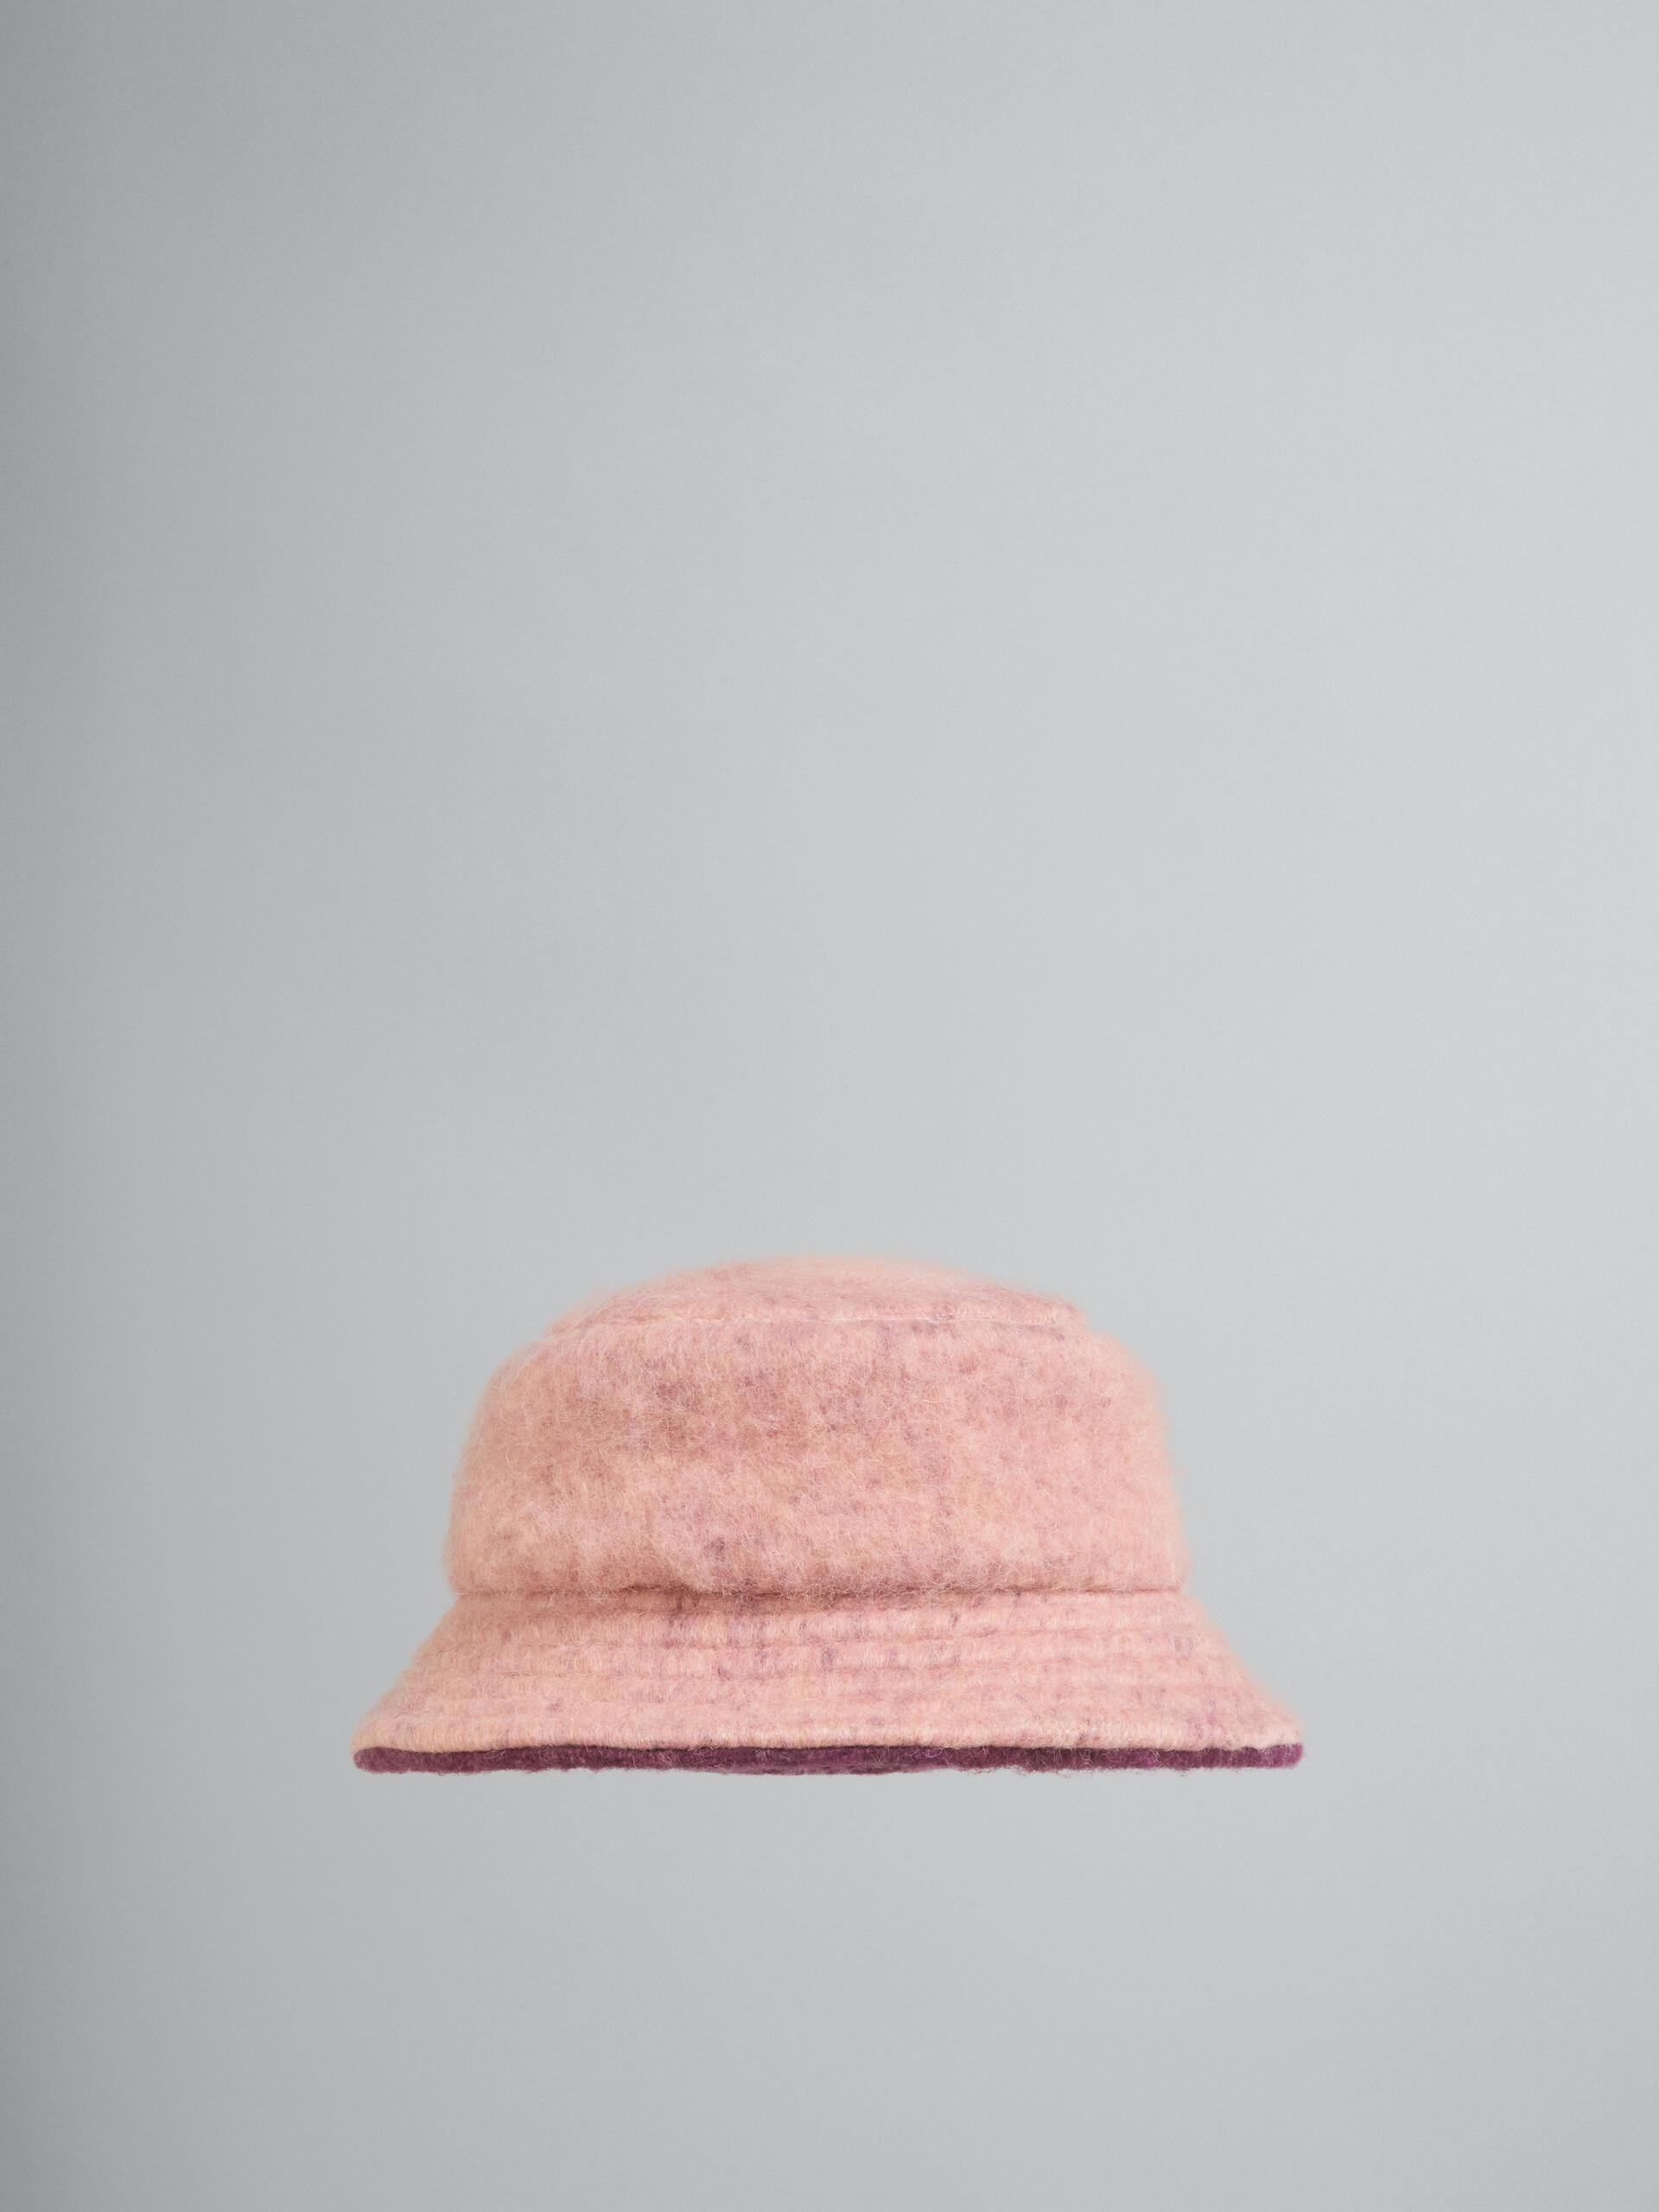 Gorro de pescador de lana cepillada rosa - Sombrero - Image 1